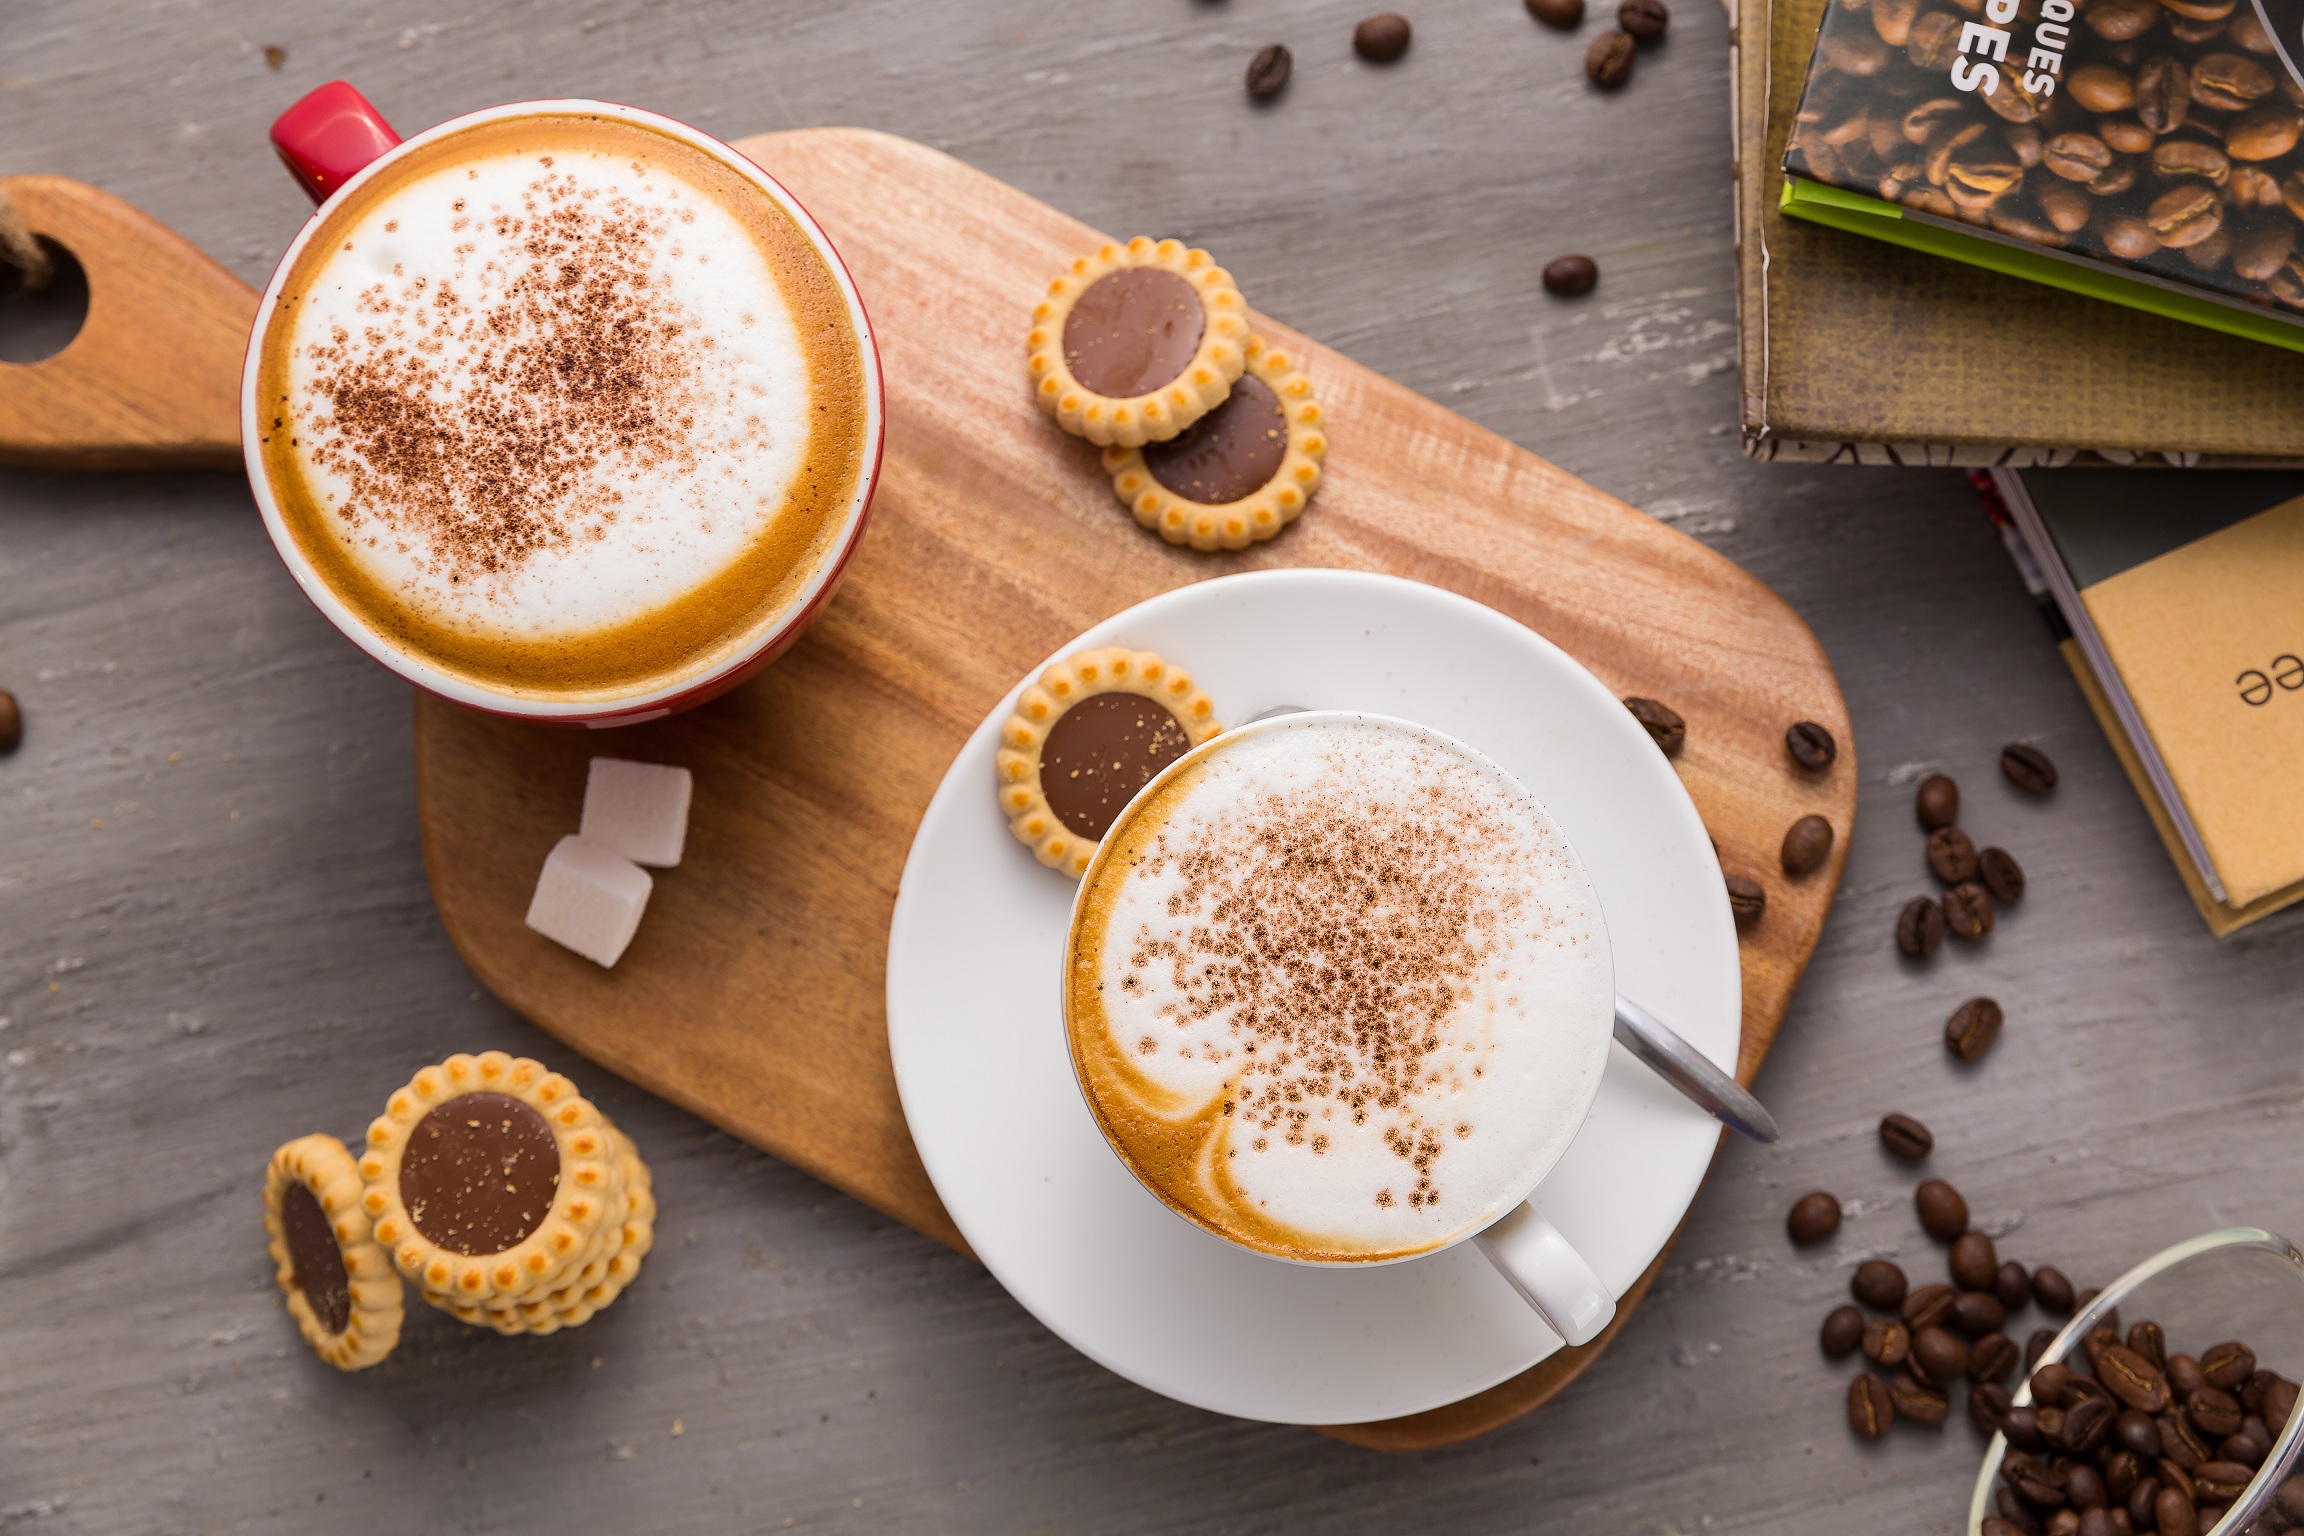 Sự tinh tế và cầu kỳ trong cách thưởng thức cà phê Cappuccino